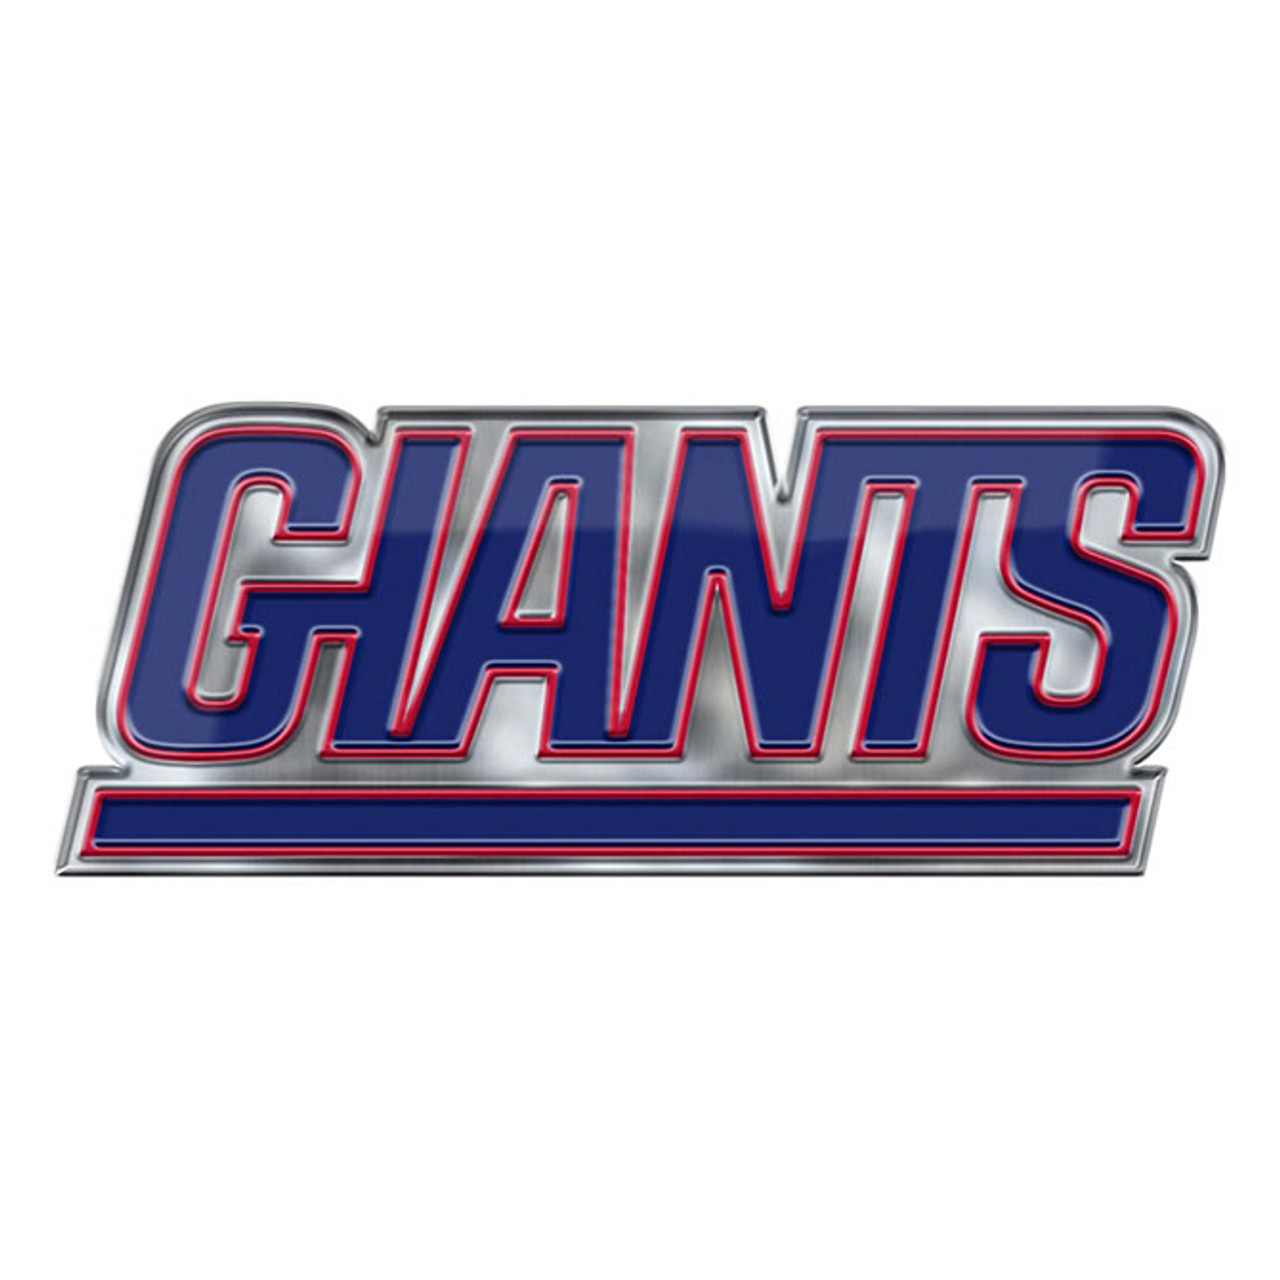 NFL New York Giants Logo Helmet Magnet (Pack of 1)